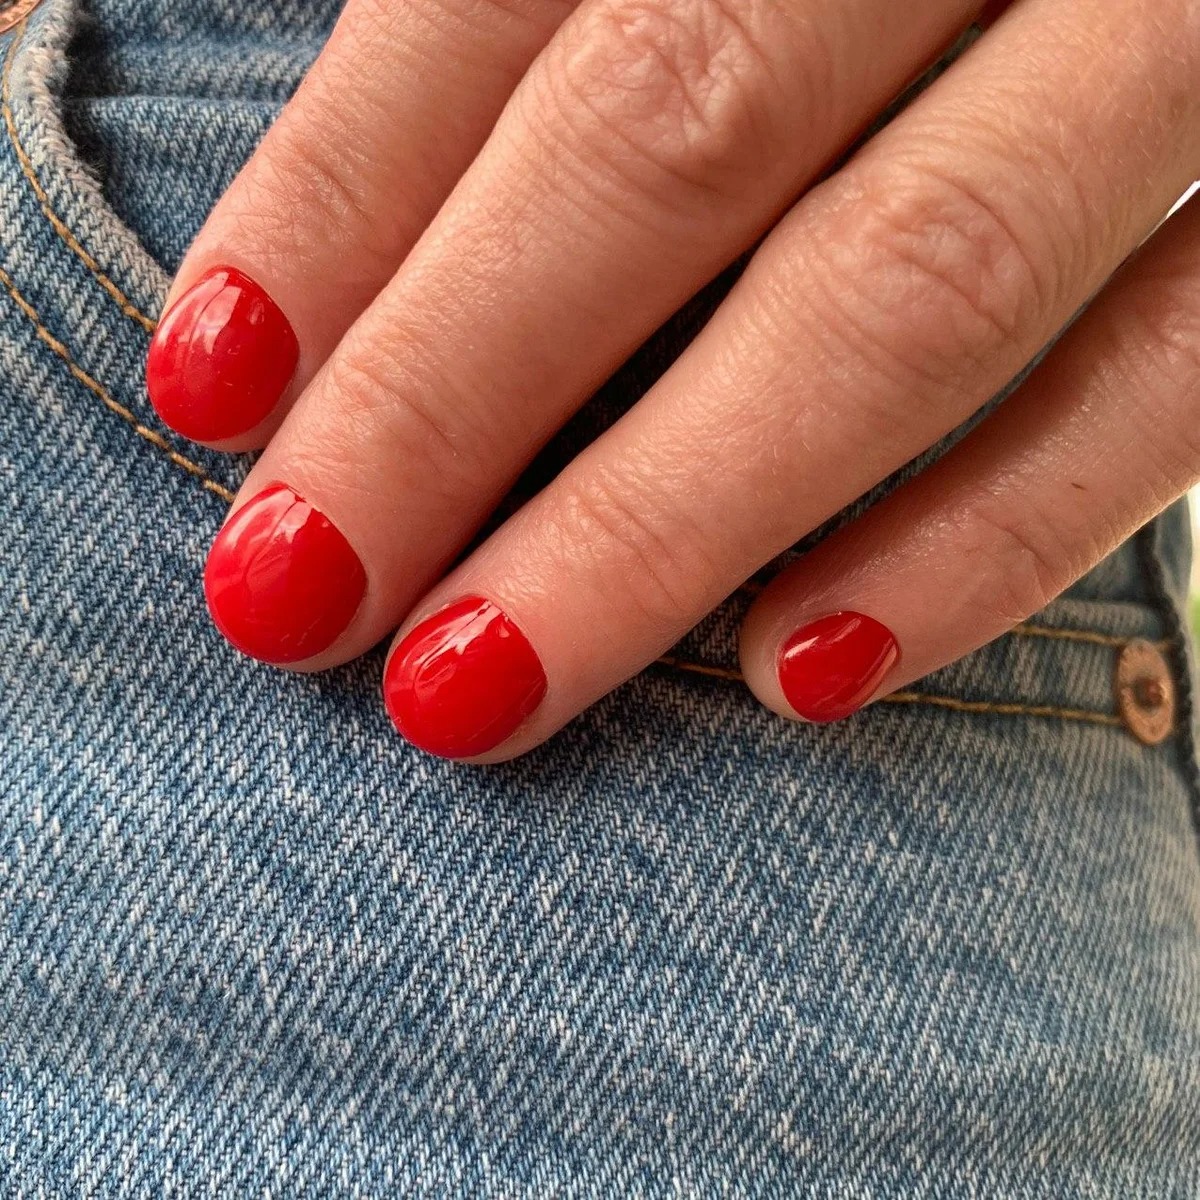 Красный маникюр на короткие ногти